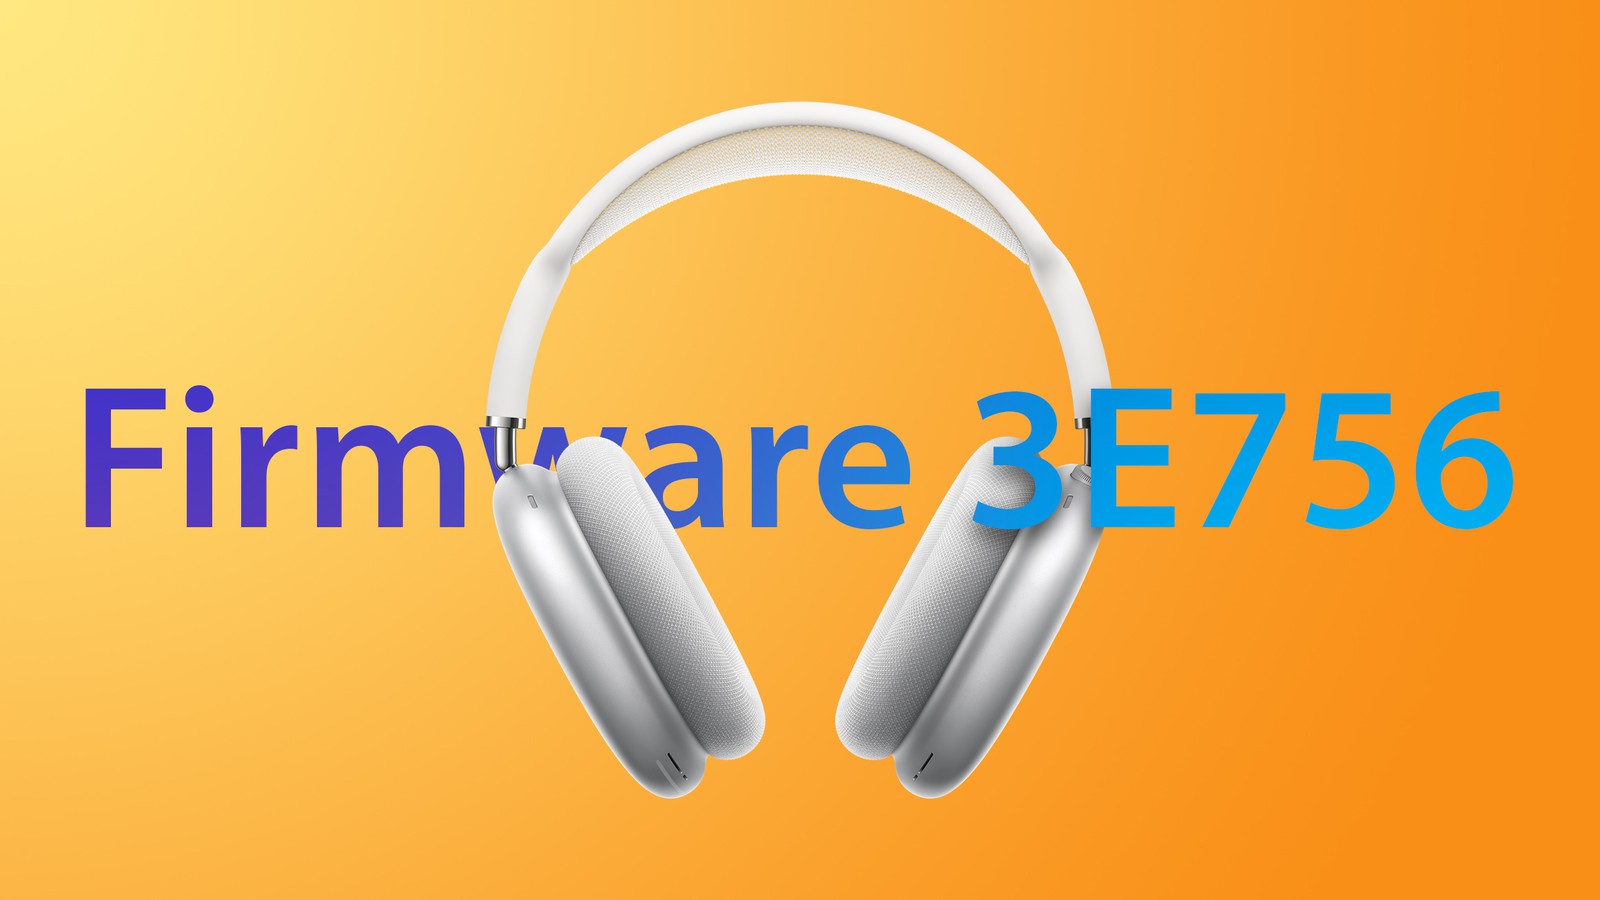 AirPods Max có firmware mới 3E756 ngay sau khi Apple Music được nâng cấp chất lượng nhạc Hi-res...